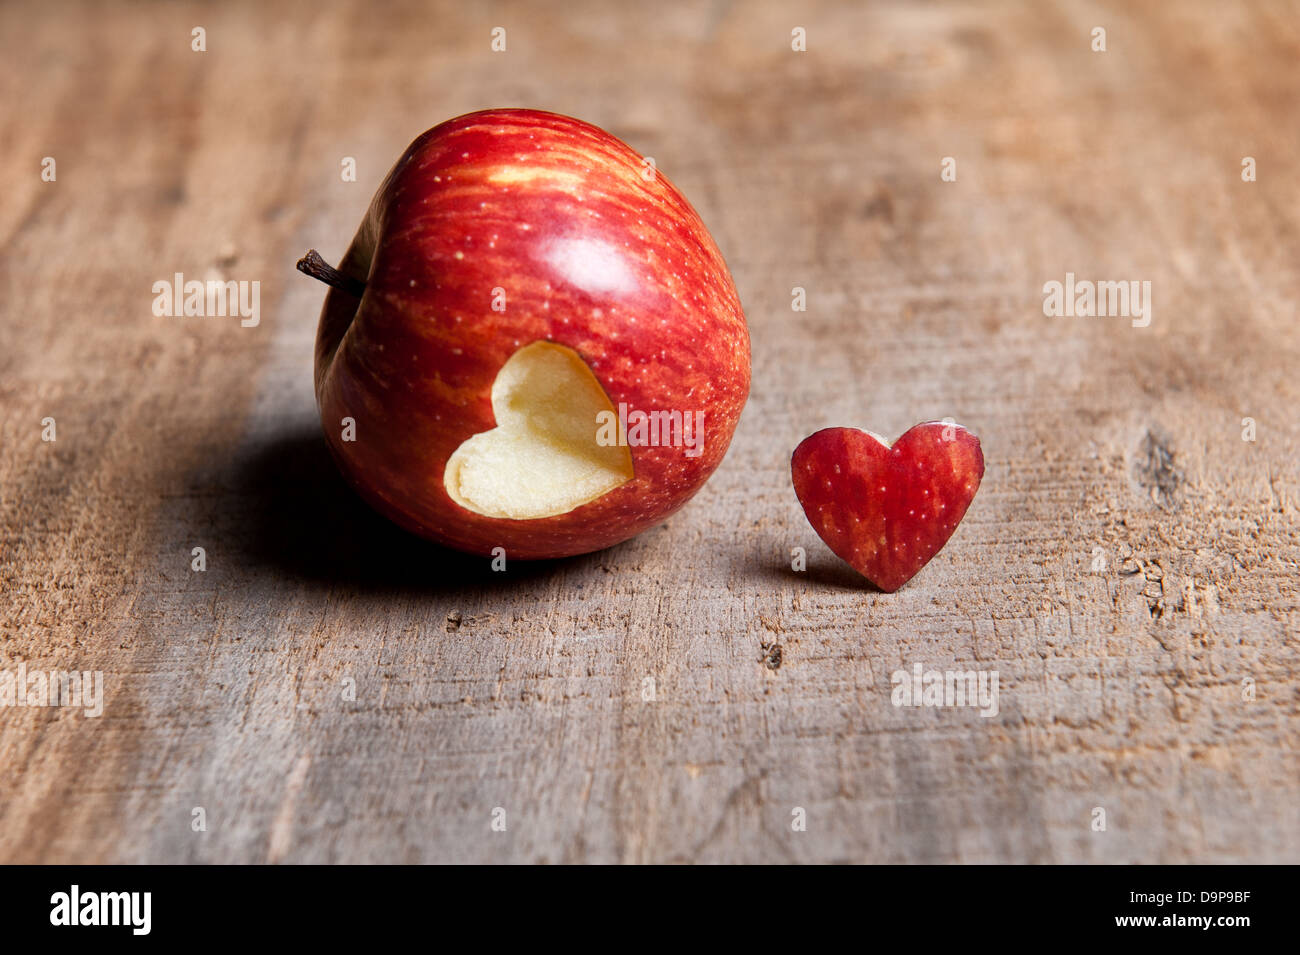 Manzana roja con forma de corazón cortado. El corazón de corte se coloca delante o al lado de la manzana en una superficie de madera de tonos cálidos. Amor Foto de stock